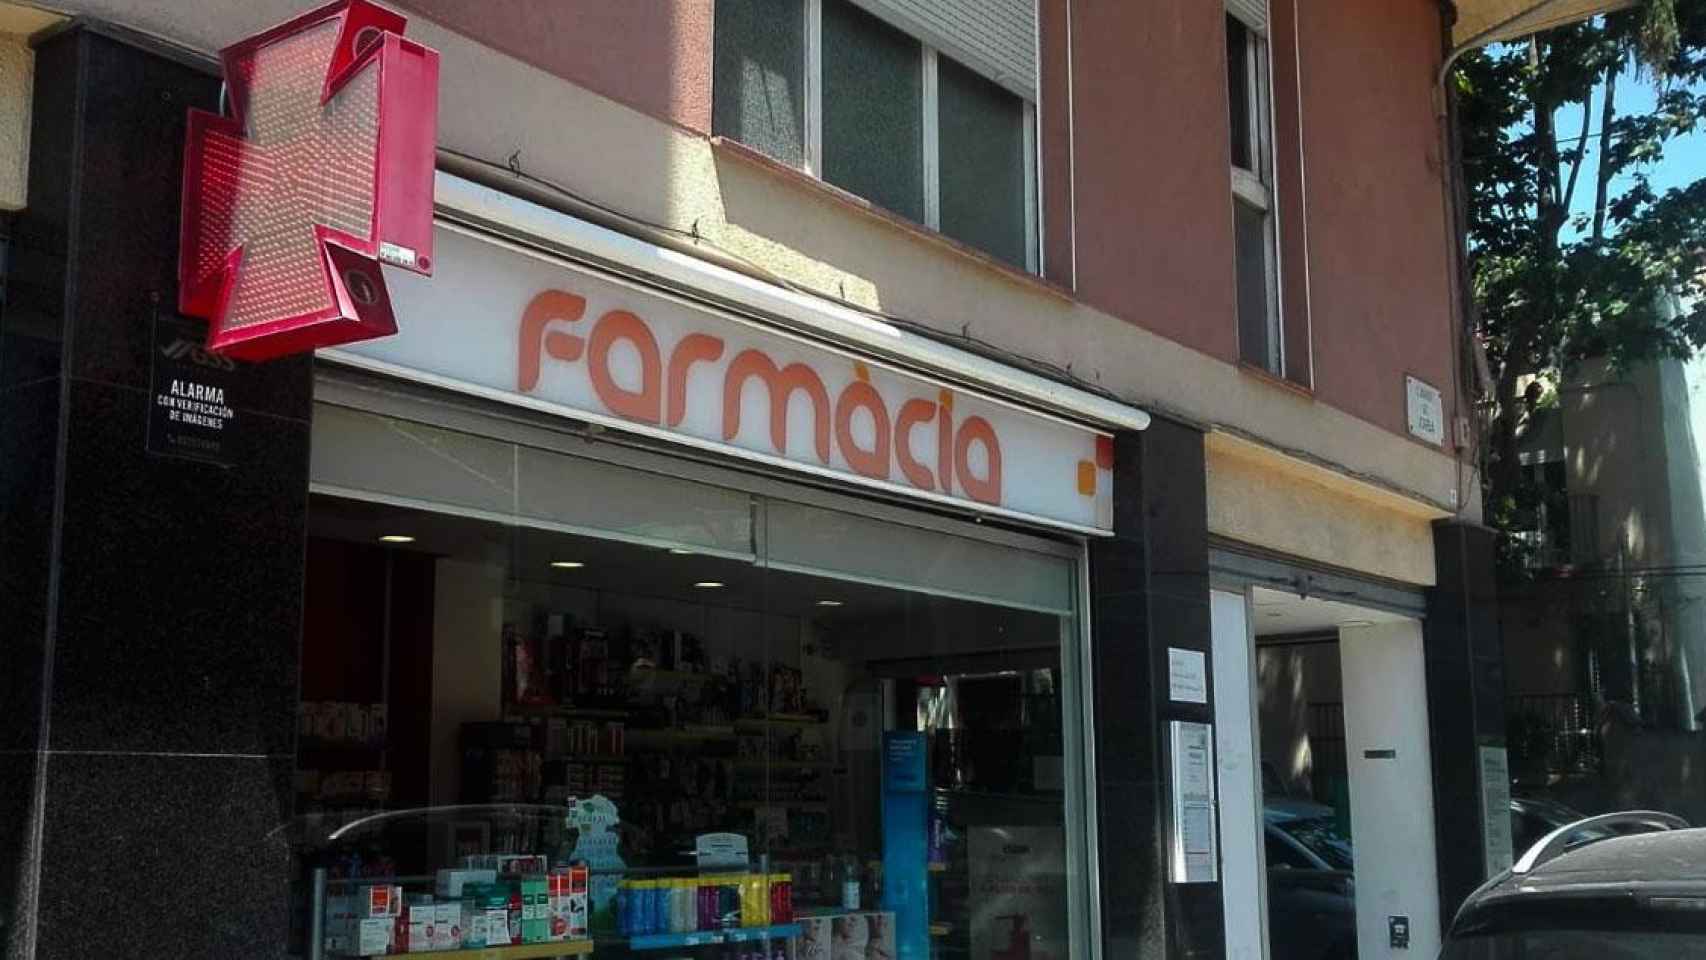 Una de las farmacias de Cataluña abierta durante la pandemia de coronavirus / CG